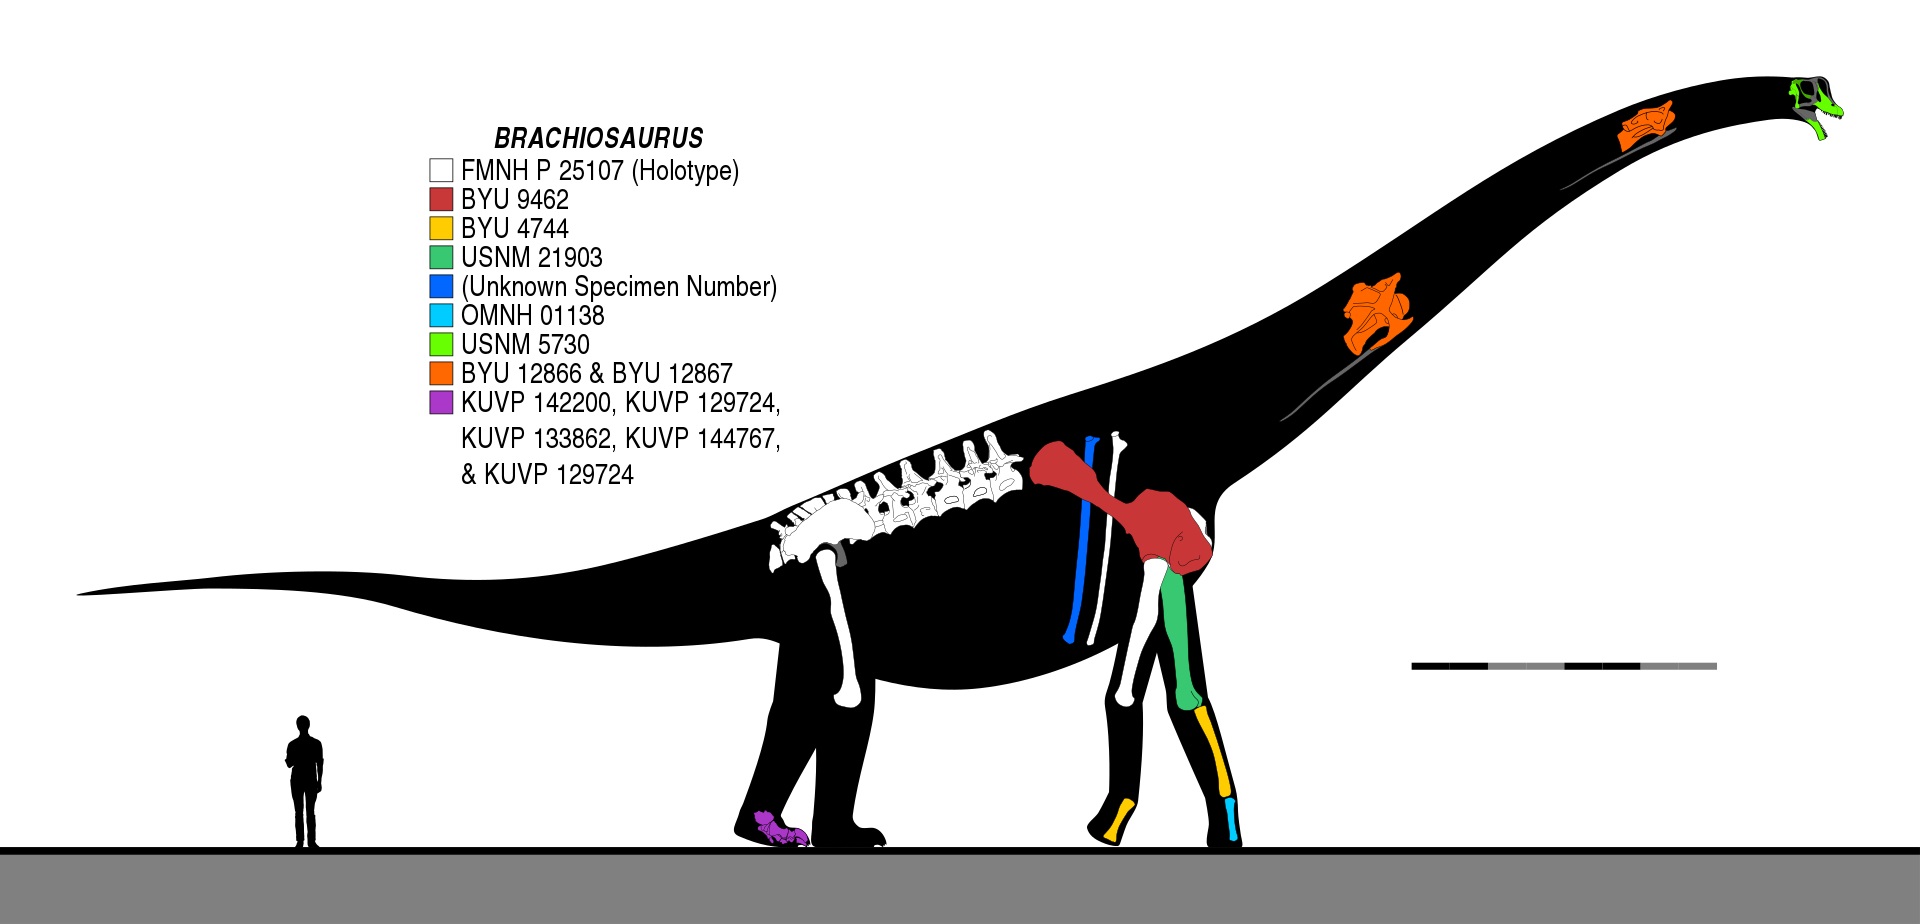 Brachiosaurus altithorax byl obří sauropodní dinosaurus, jehož délka je odhadována až na 26 metrů, výška na 13 metrů a hmotnost zhruba na 30 až 60 tun. Nebyl tedy největším známým dinosaurem, ale patřil mezi obří druhy, jejichž anatomie a fyziologie 